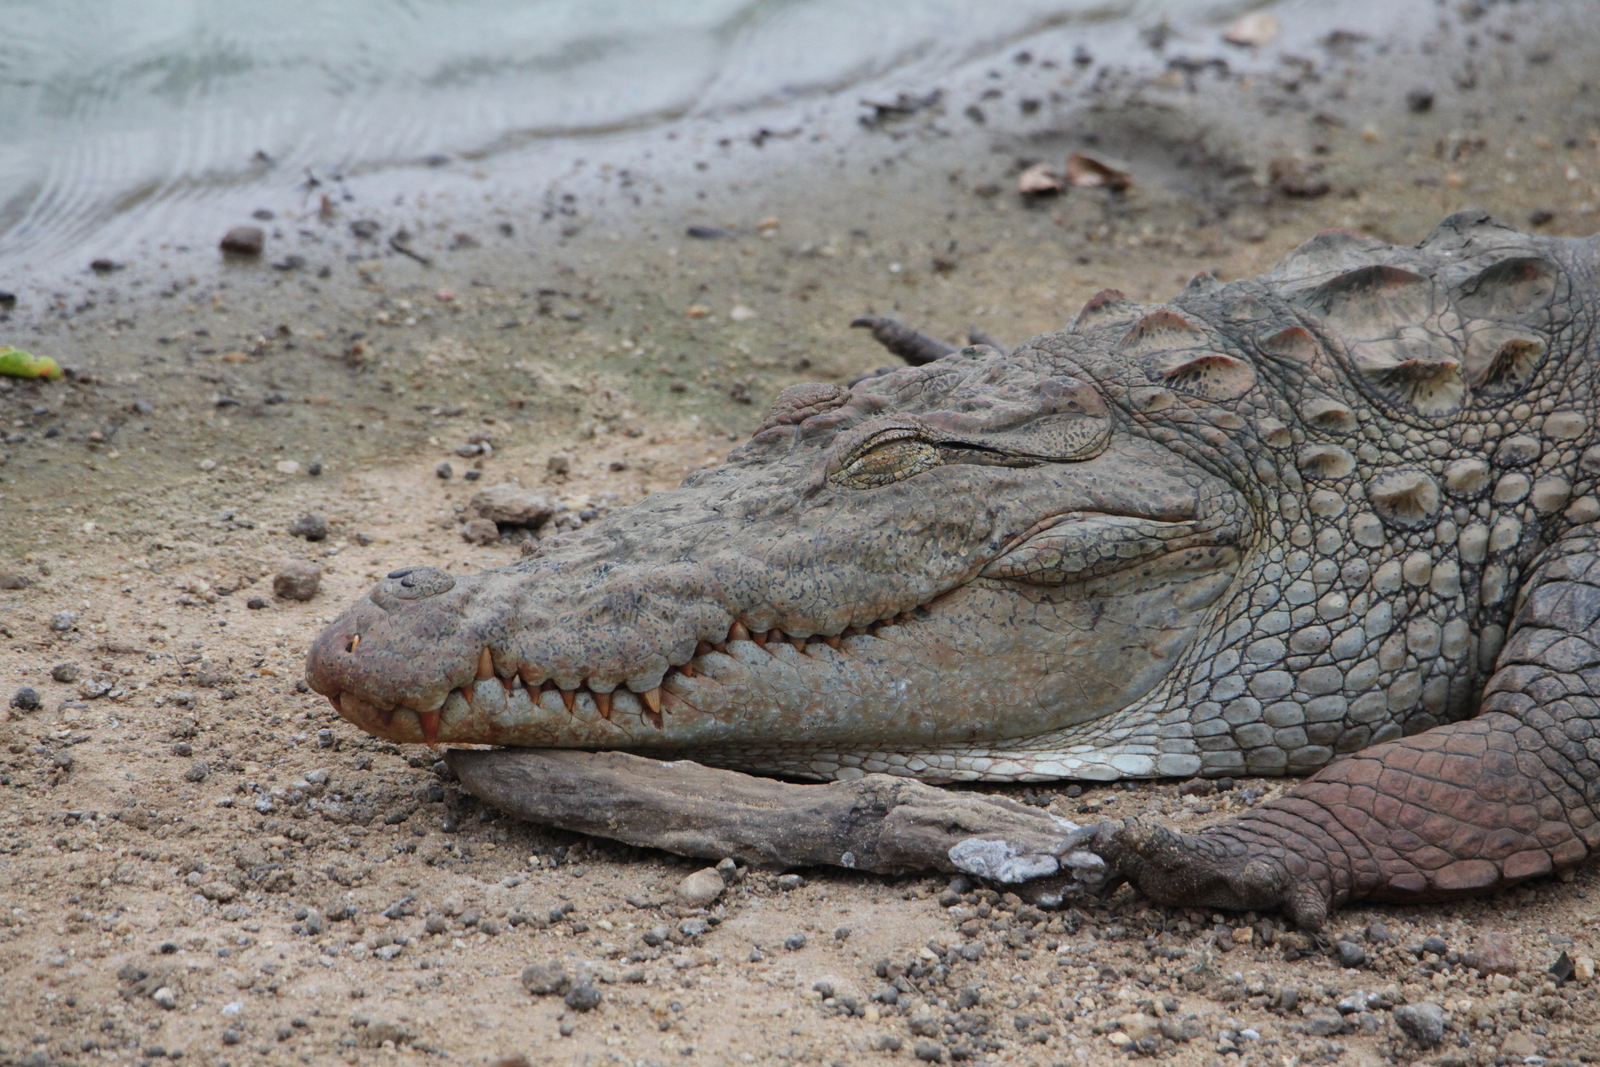 Yala N.P. : Moeraskrokodil (Crocodylus Palustris)